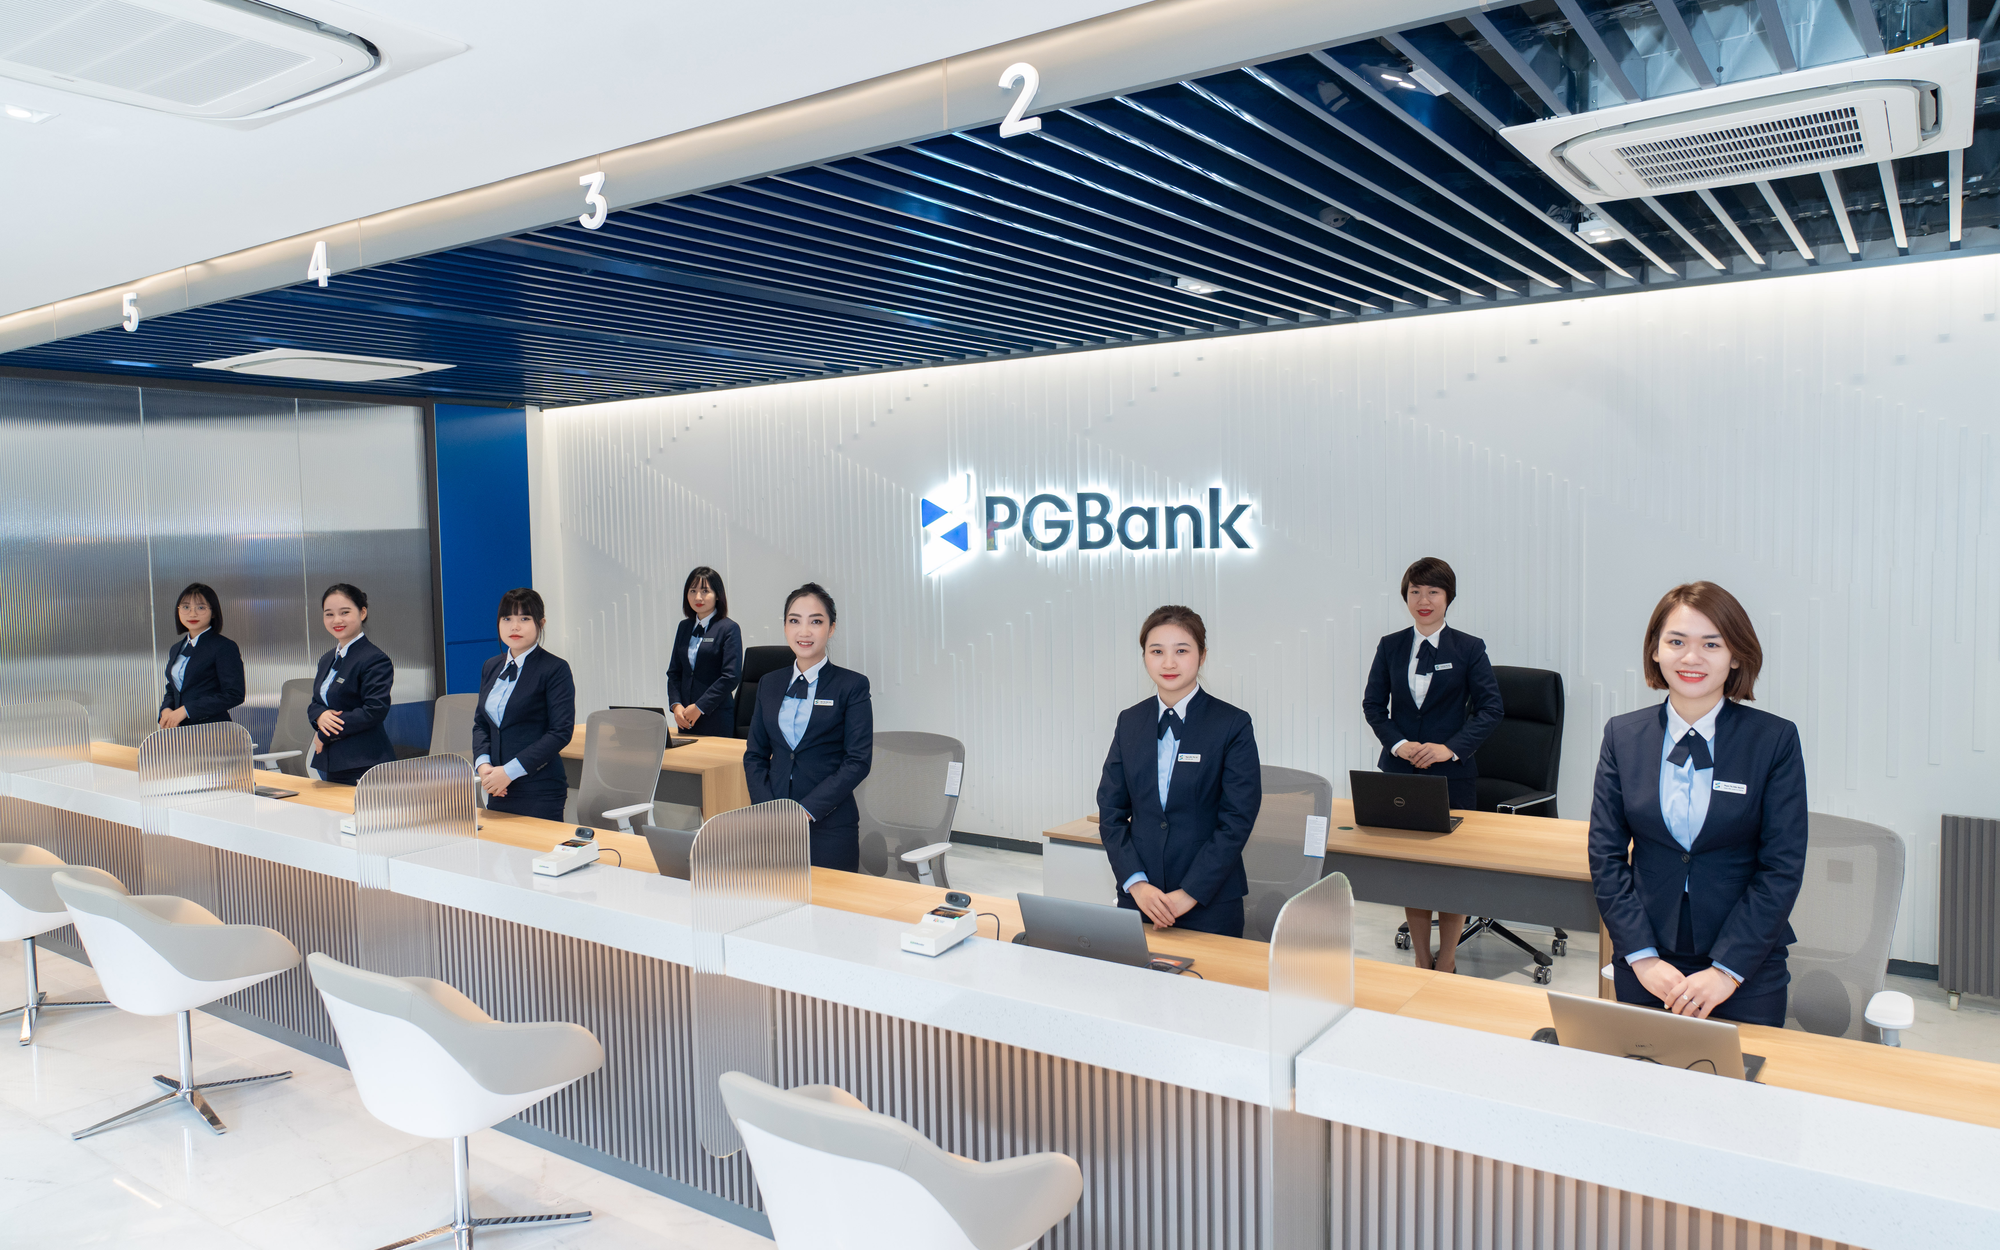 Chuyện chưa từng có trong lịch sử của ngân hàng PGBank